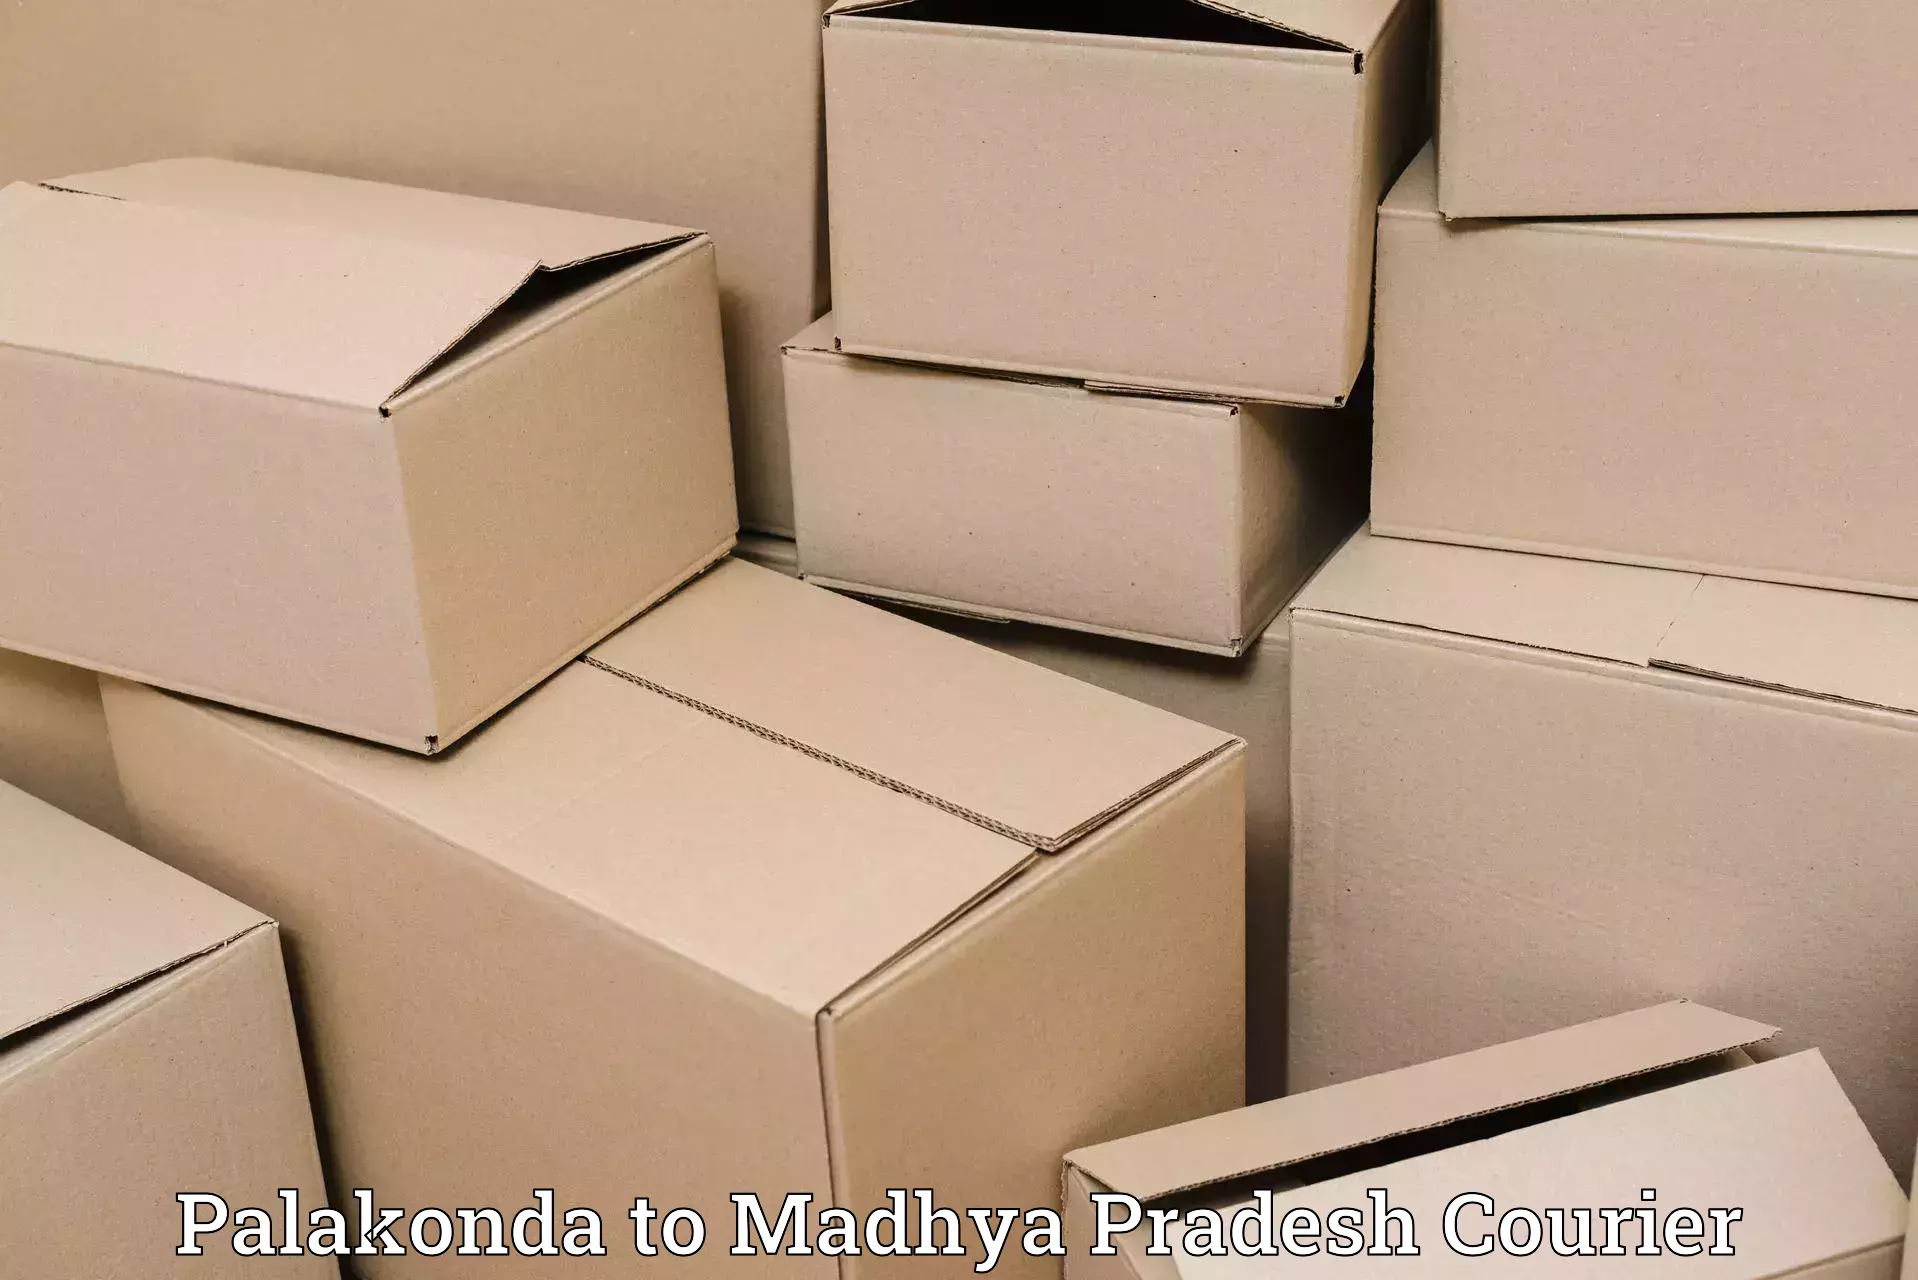 Affordable shipping rates Palakonda to Maheshwar